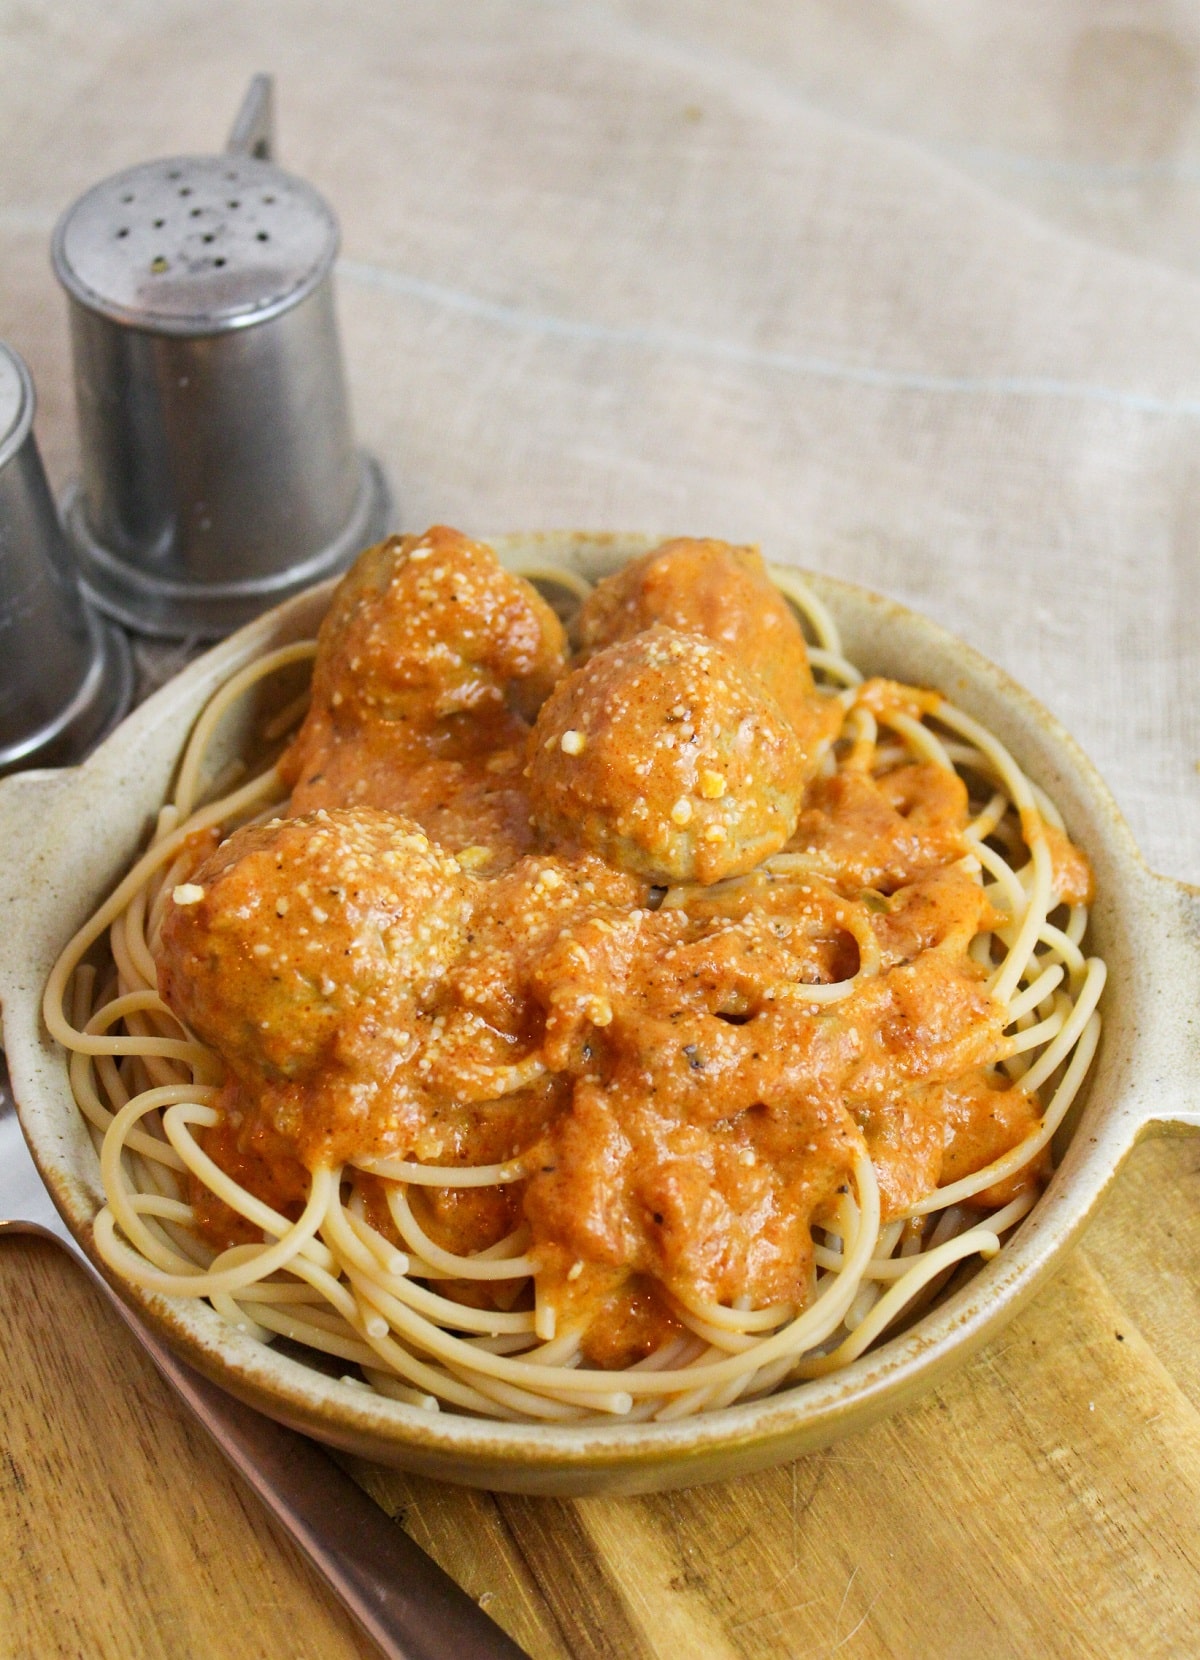 Meatballs cooked in a creamy tomato sauce over spaghetti.